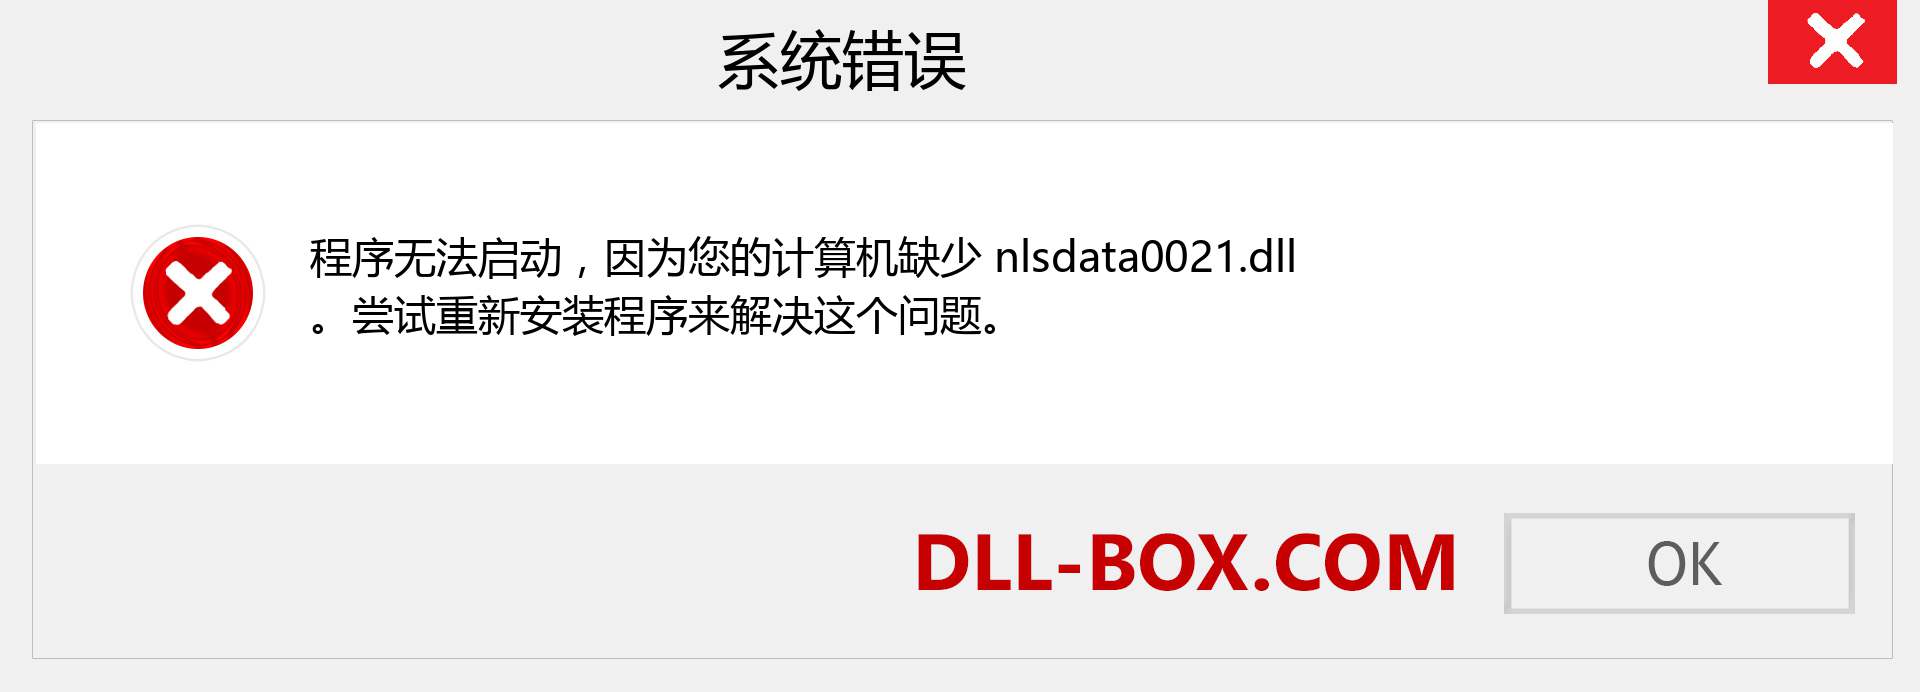 nlsdata0021.dll 文件丢失？。 适用于 Windows 7、8、10 的下载 - 修复 Windows、照片、图像上的 nlsdata0021 dll 丢失错误